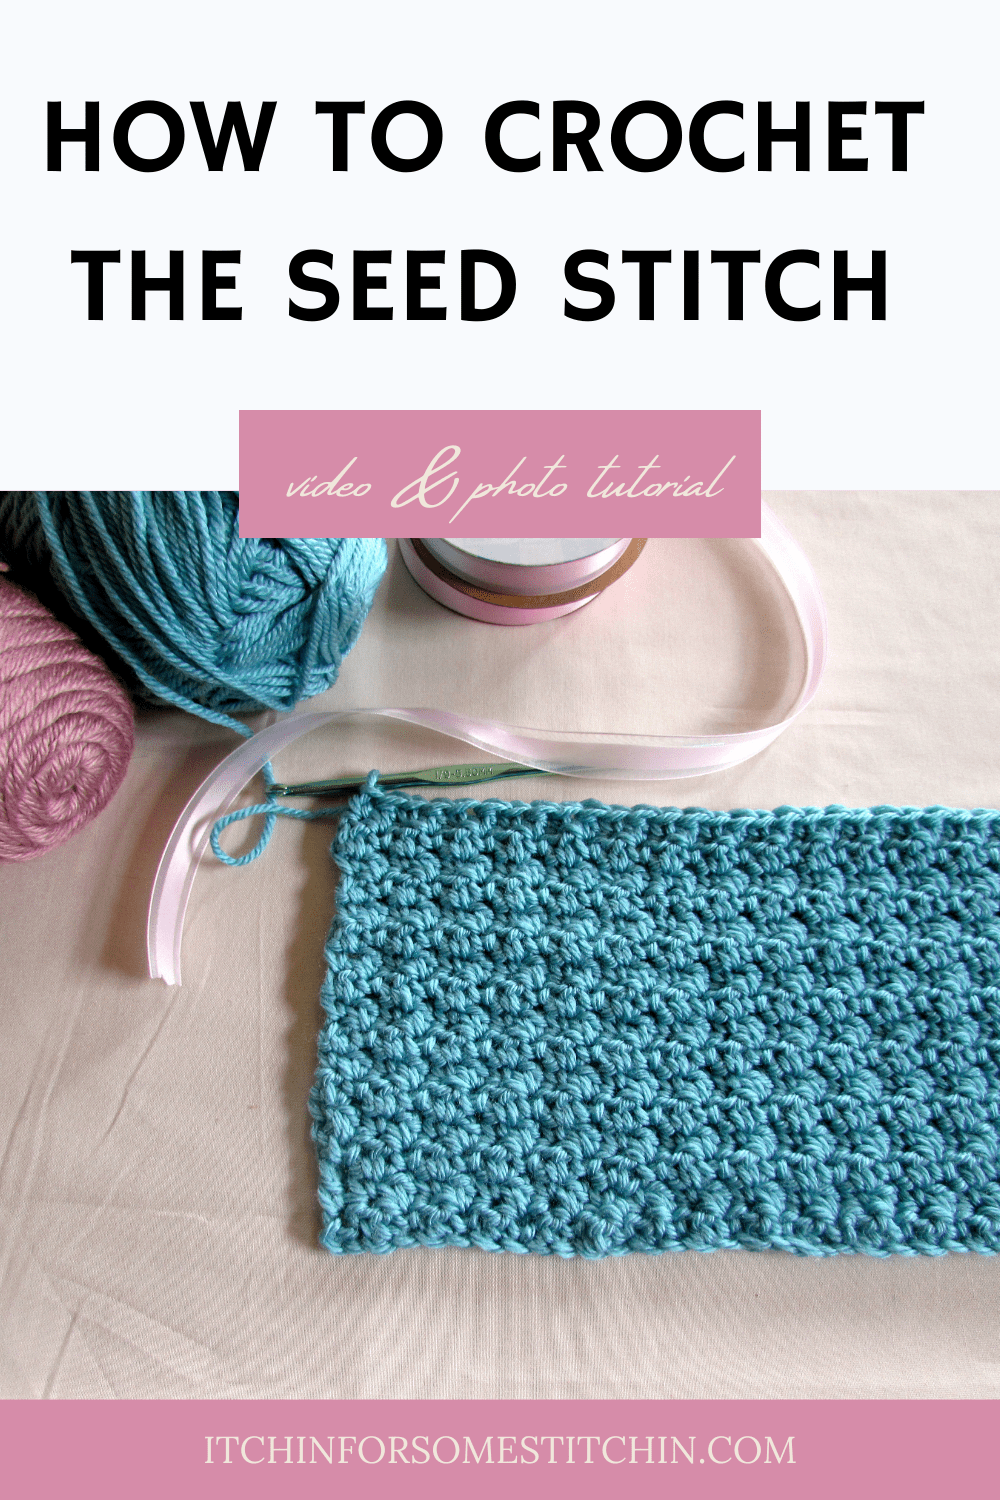  Crochet Seed Stitch Pinterest Pin 2